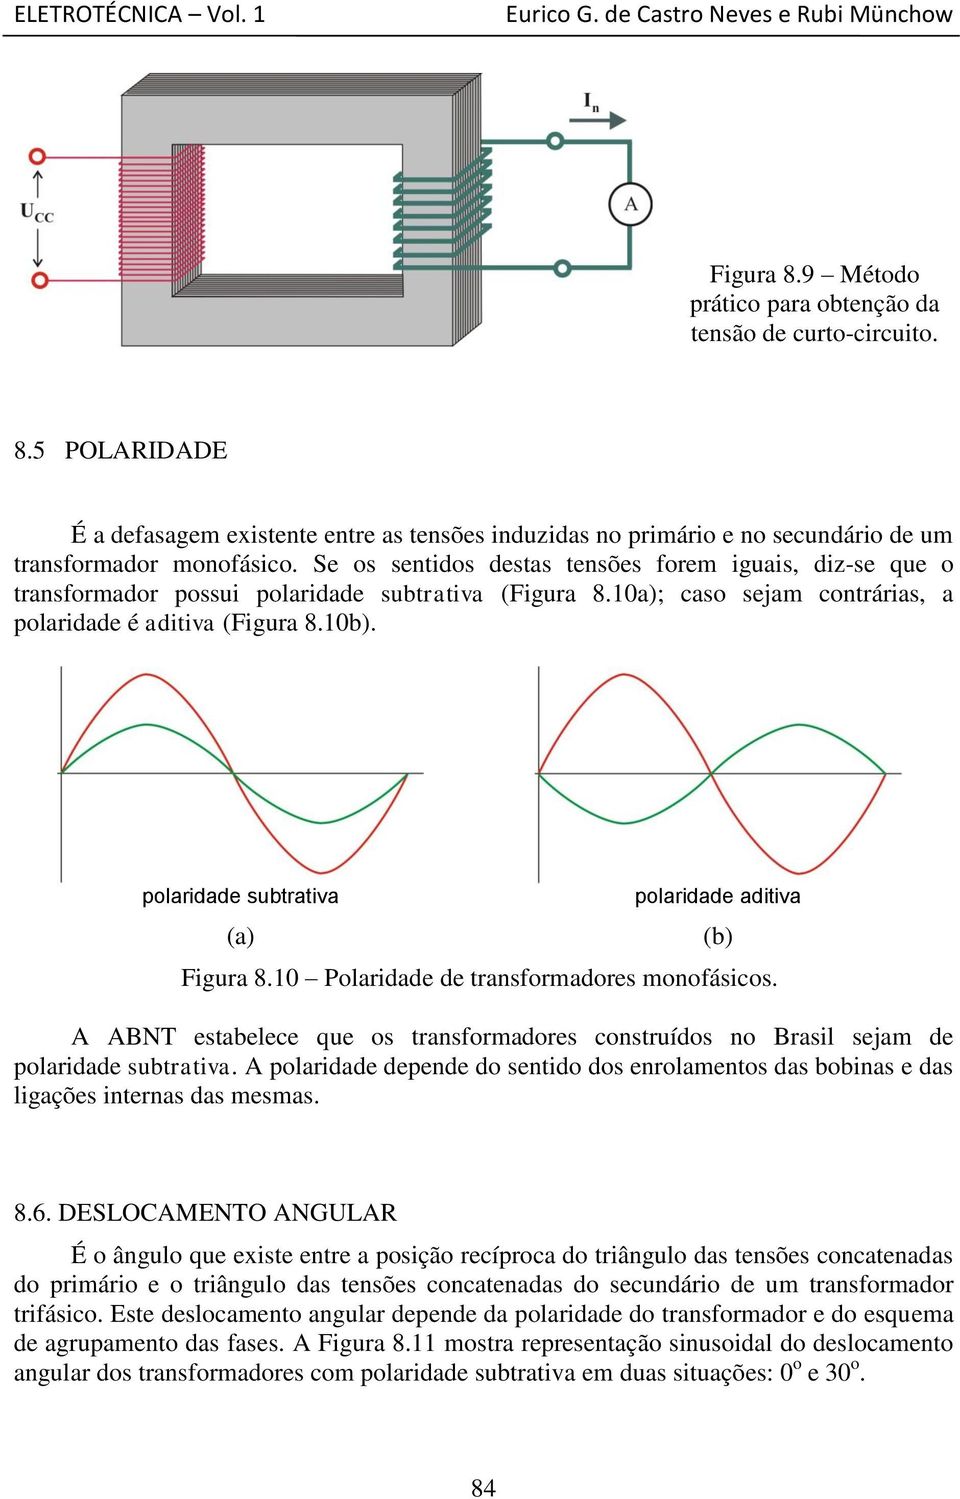 polaridade subtrativa (a) polaridade aditiva Figura 8.10 Polaridade de transformadores monofásicos. A ABNT estabelece que os transformadores construídos no Brasil sejam de polaridade subtrativa.